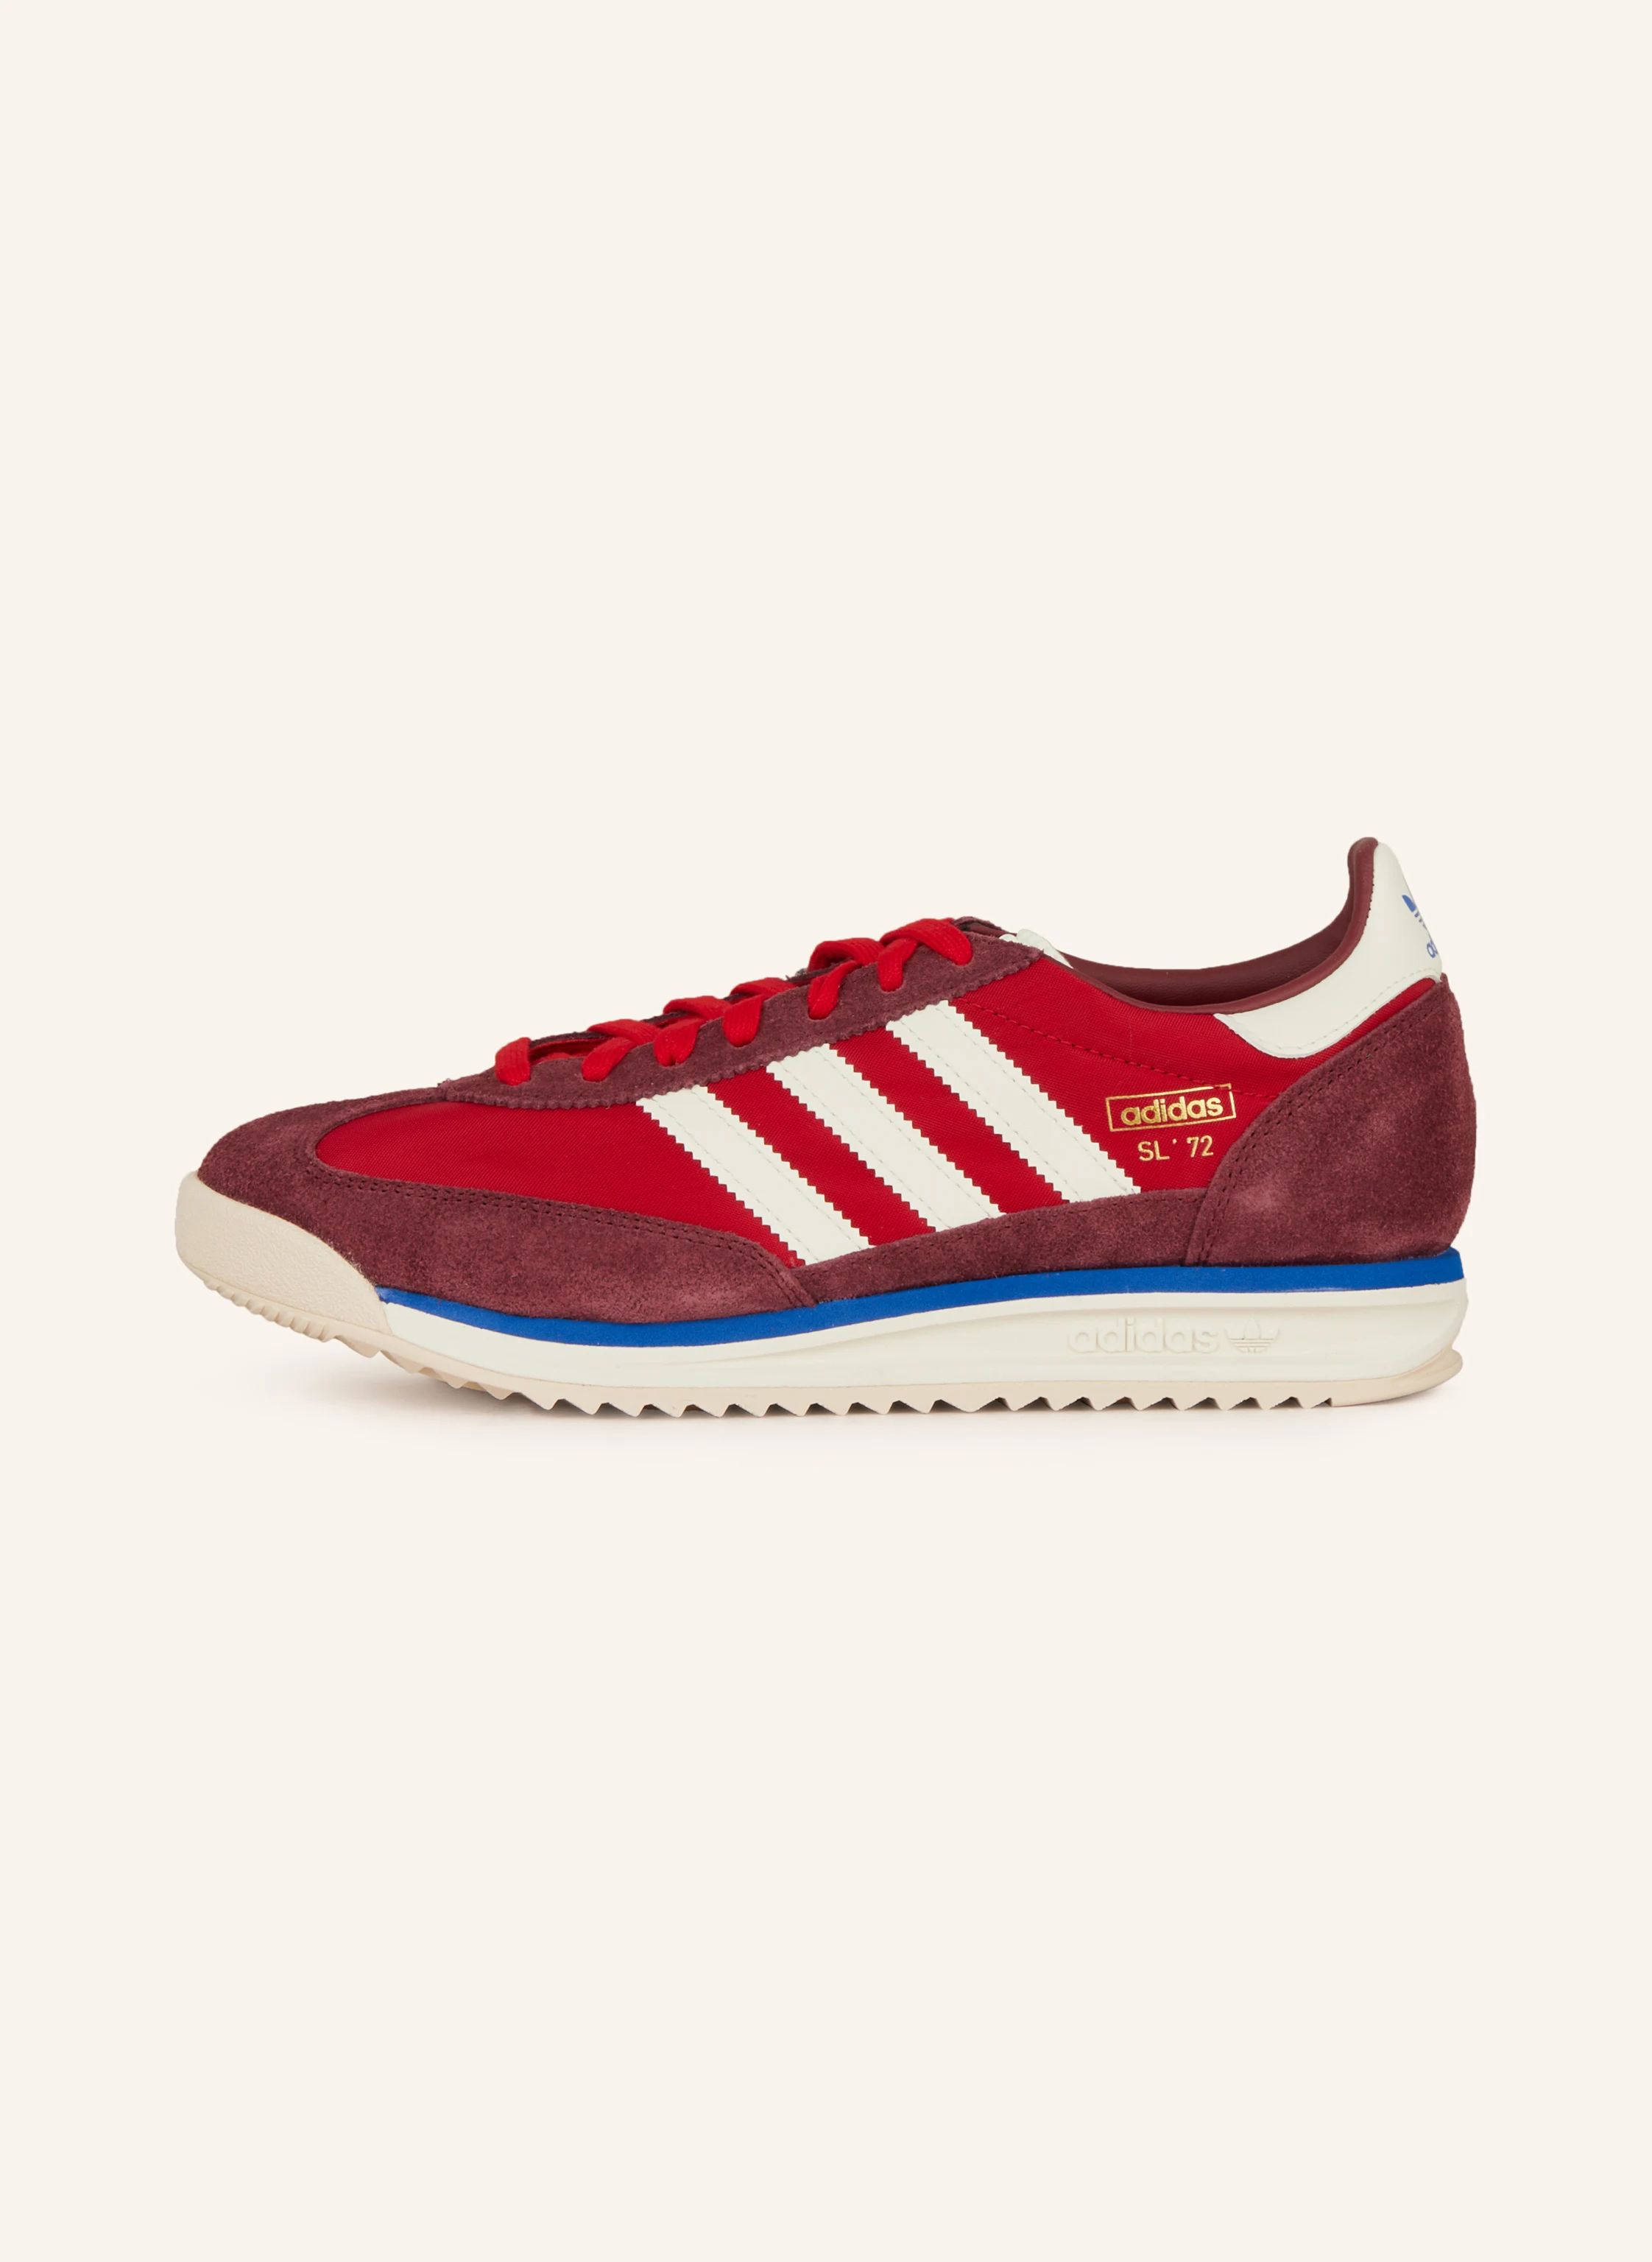 adidas Originals Sneaker SL 72 RS in rot/ dunkelrot/ weiss | Breuninger (DACH)